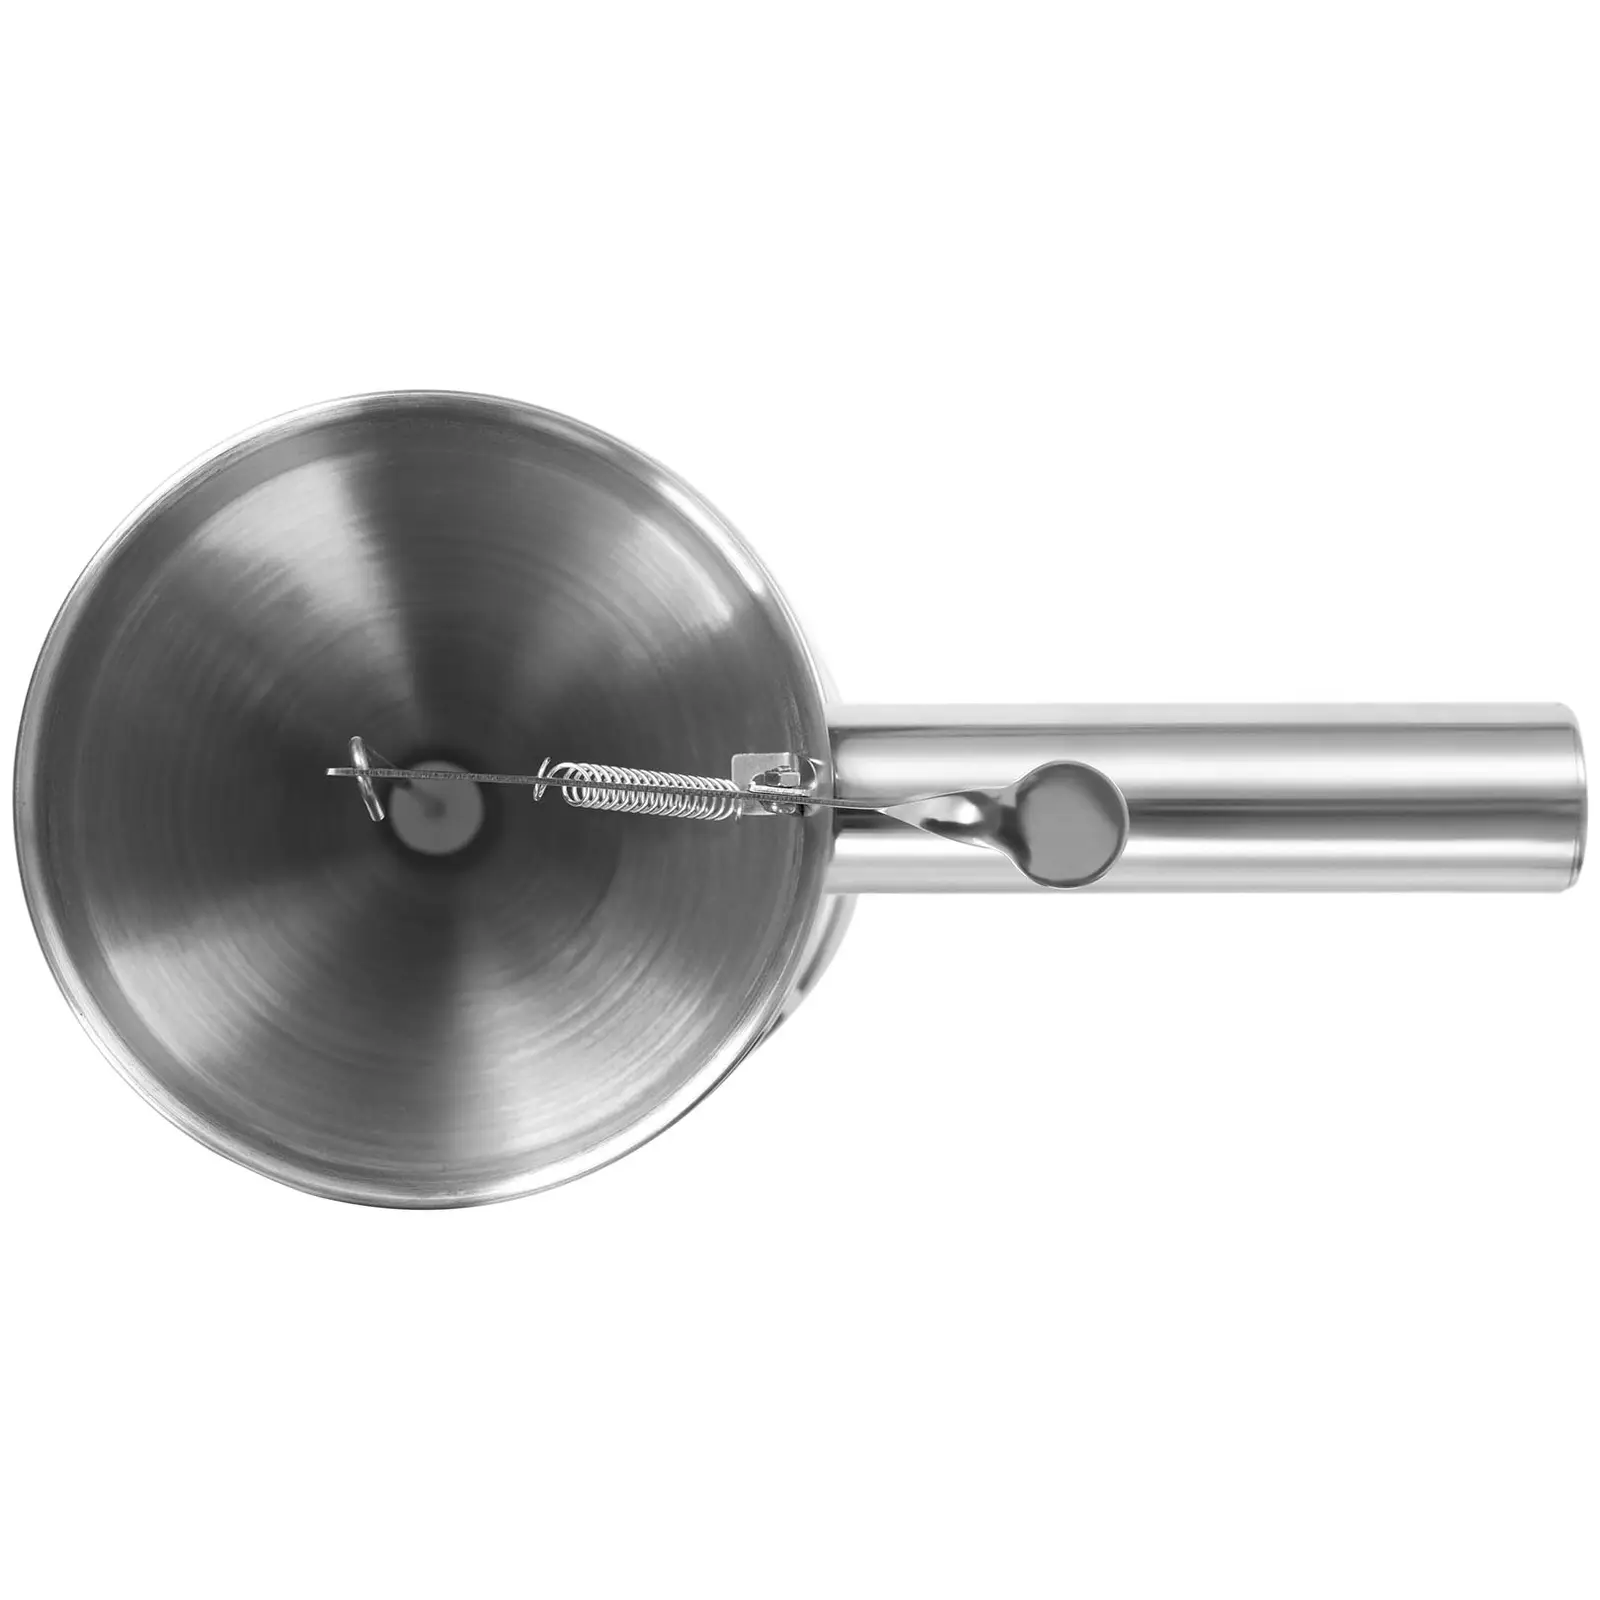 Sausdispenser -  L - Rustfritt stål - dispenseråpning: 8 mm